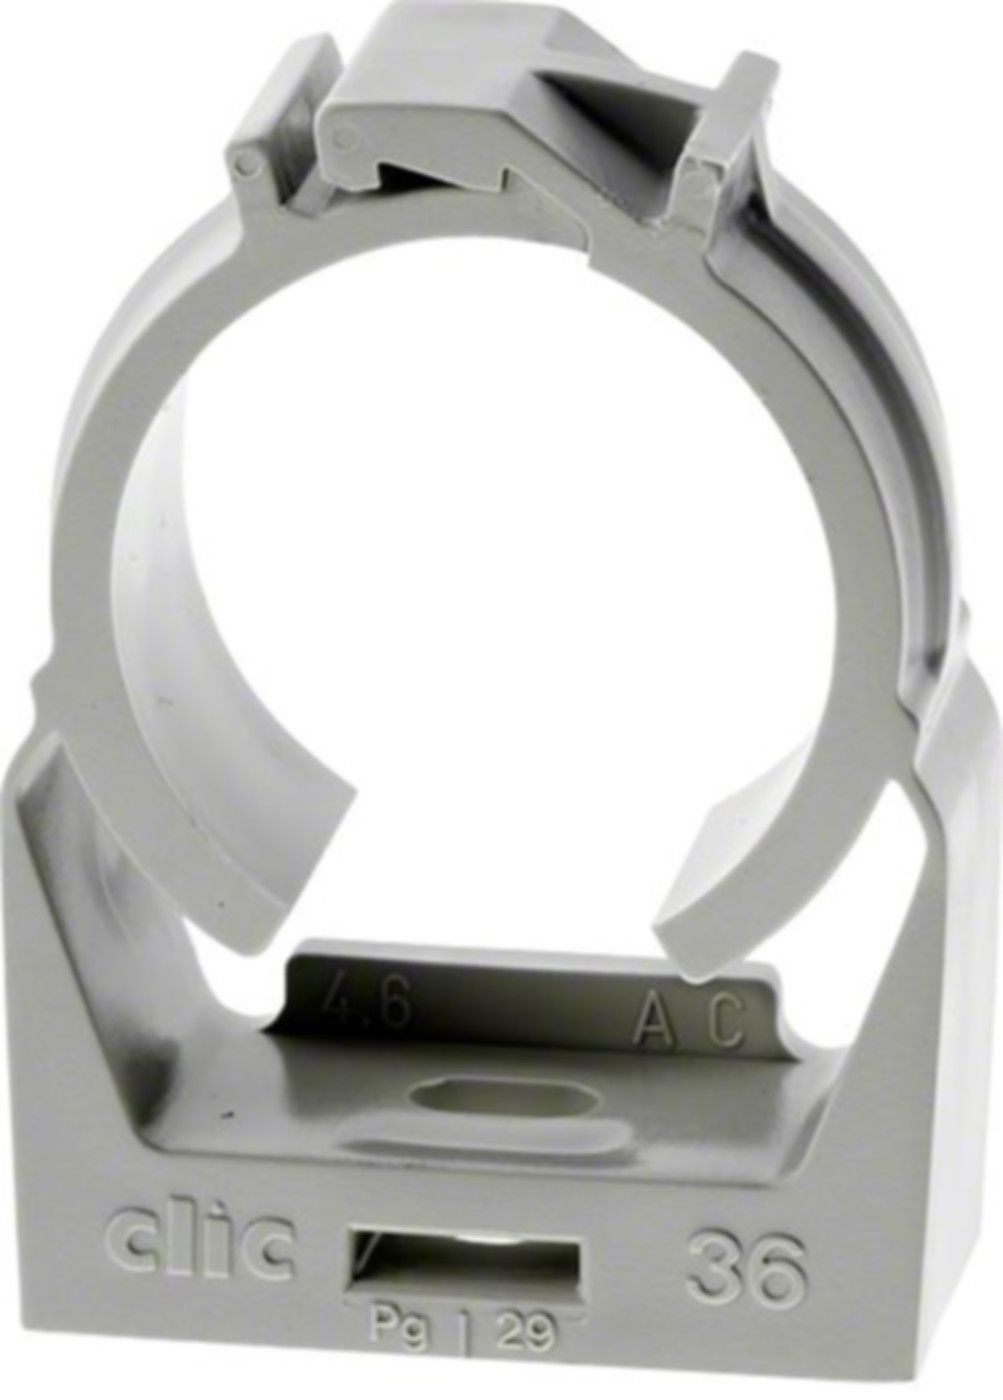 Rohrschelle Clic hellgrau 14.3 - 16.8 mm - Rohrschellen/Briden aus Kunststoff